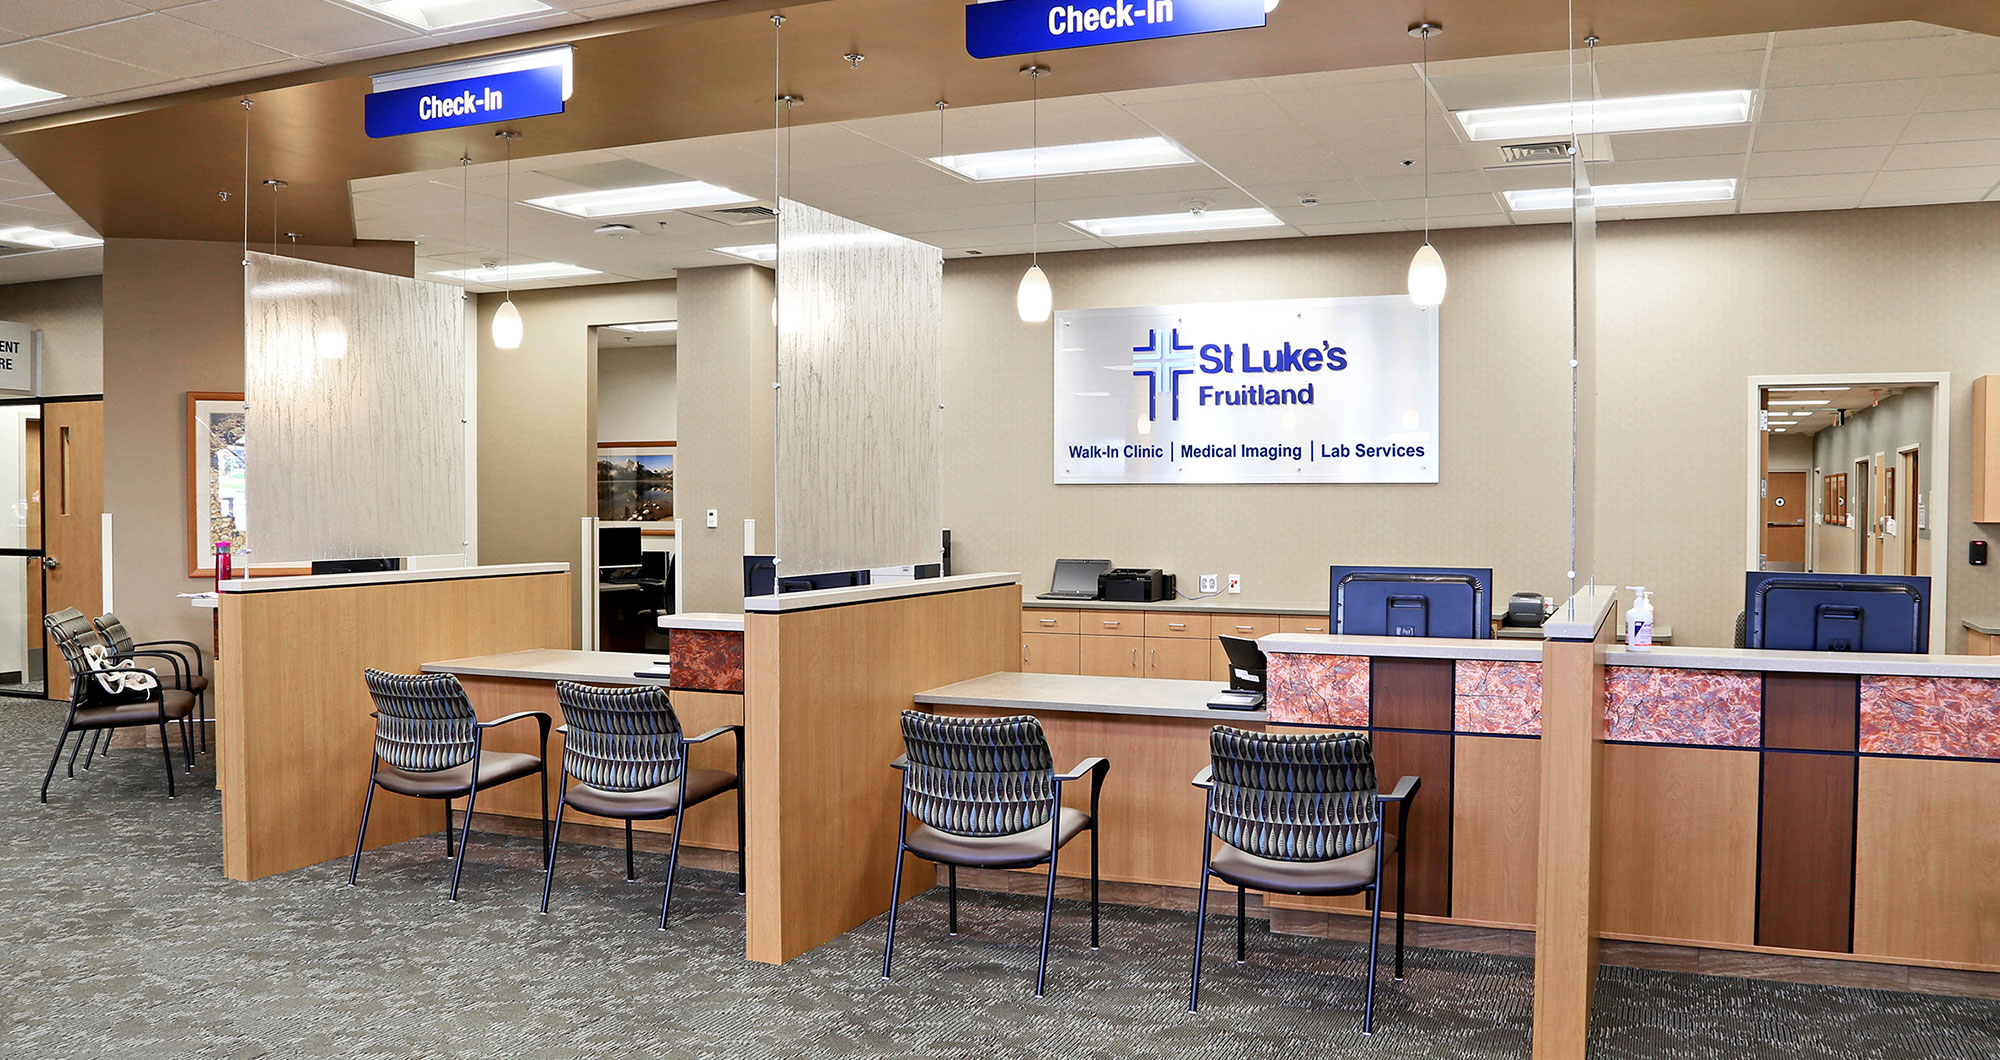 St. Luke's Fruitland Medical Office Building Check In Desk